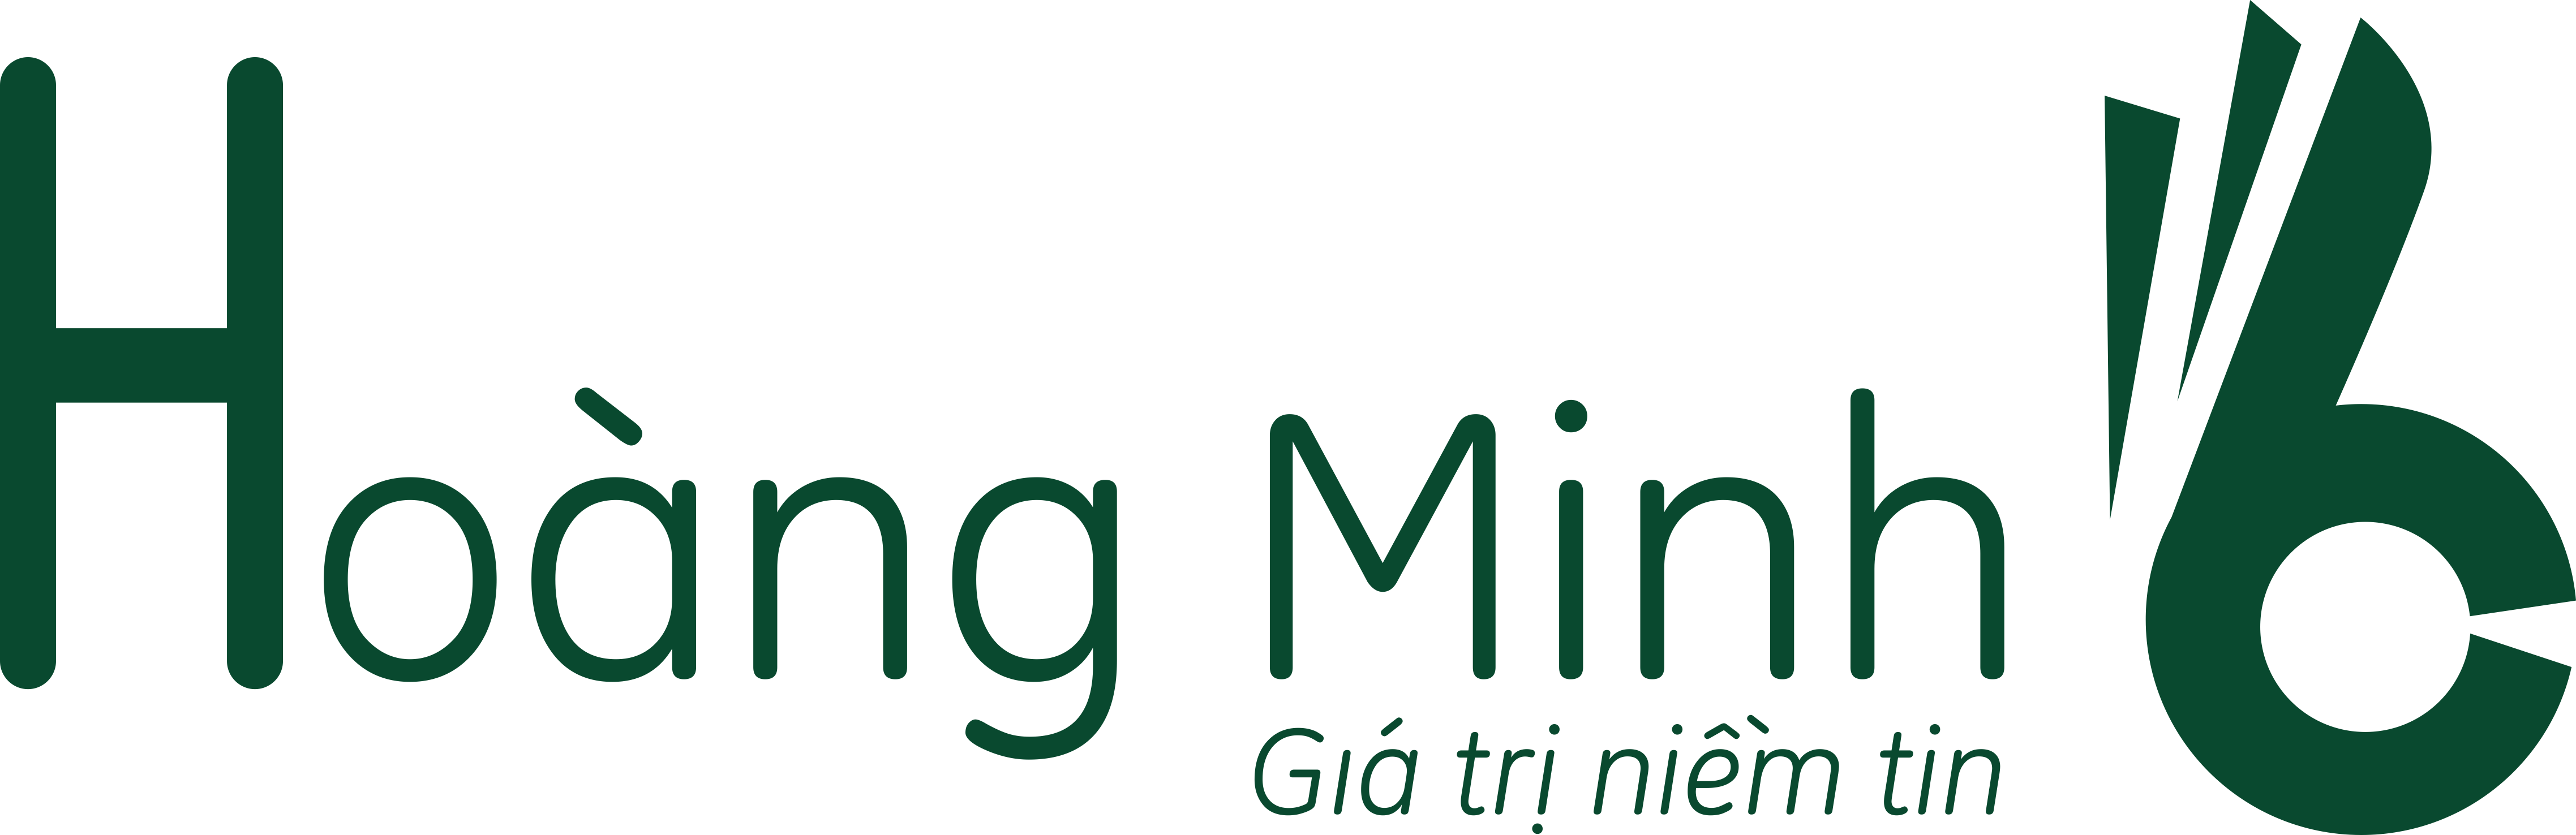 logo Quà tặng Hoàng Minh